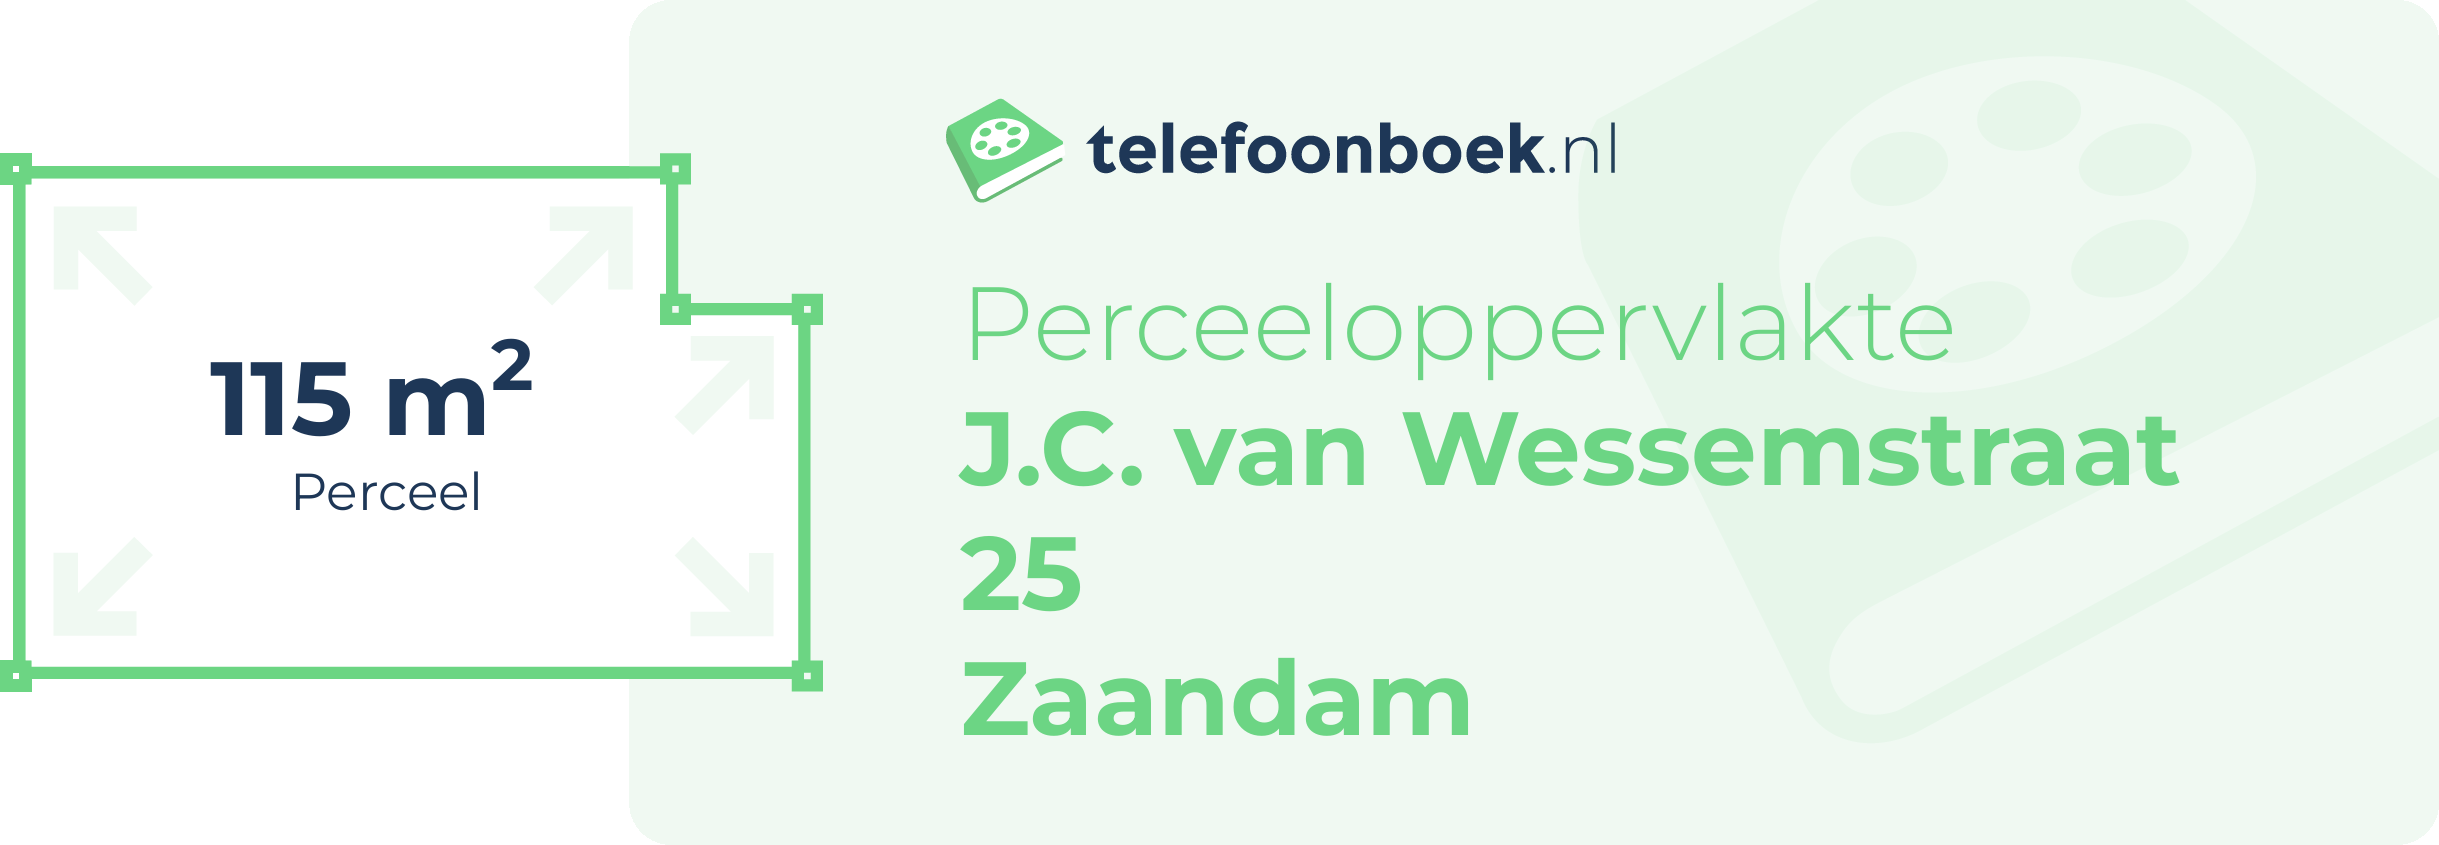 Perceeloppervlakte J.C. Van Wessemstraat 25 Zaandam